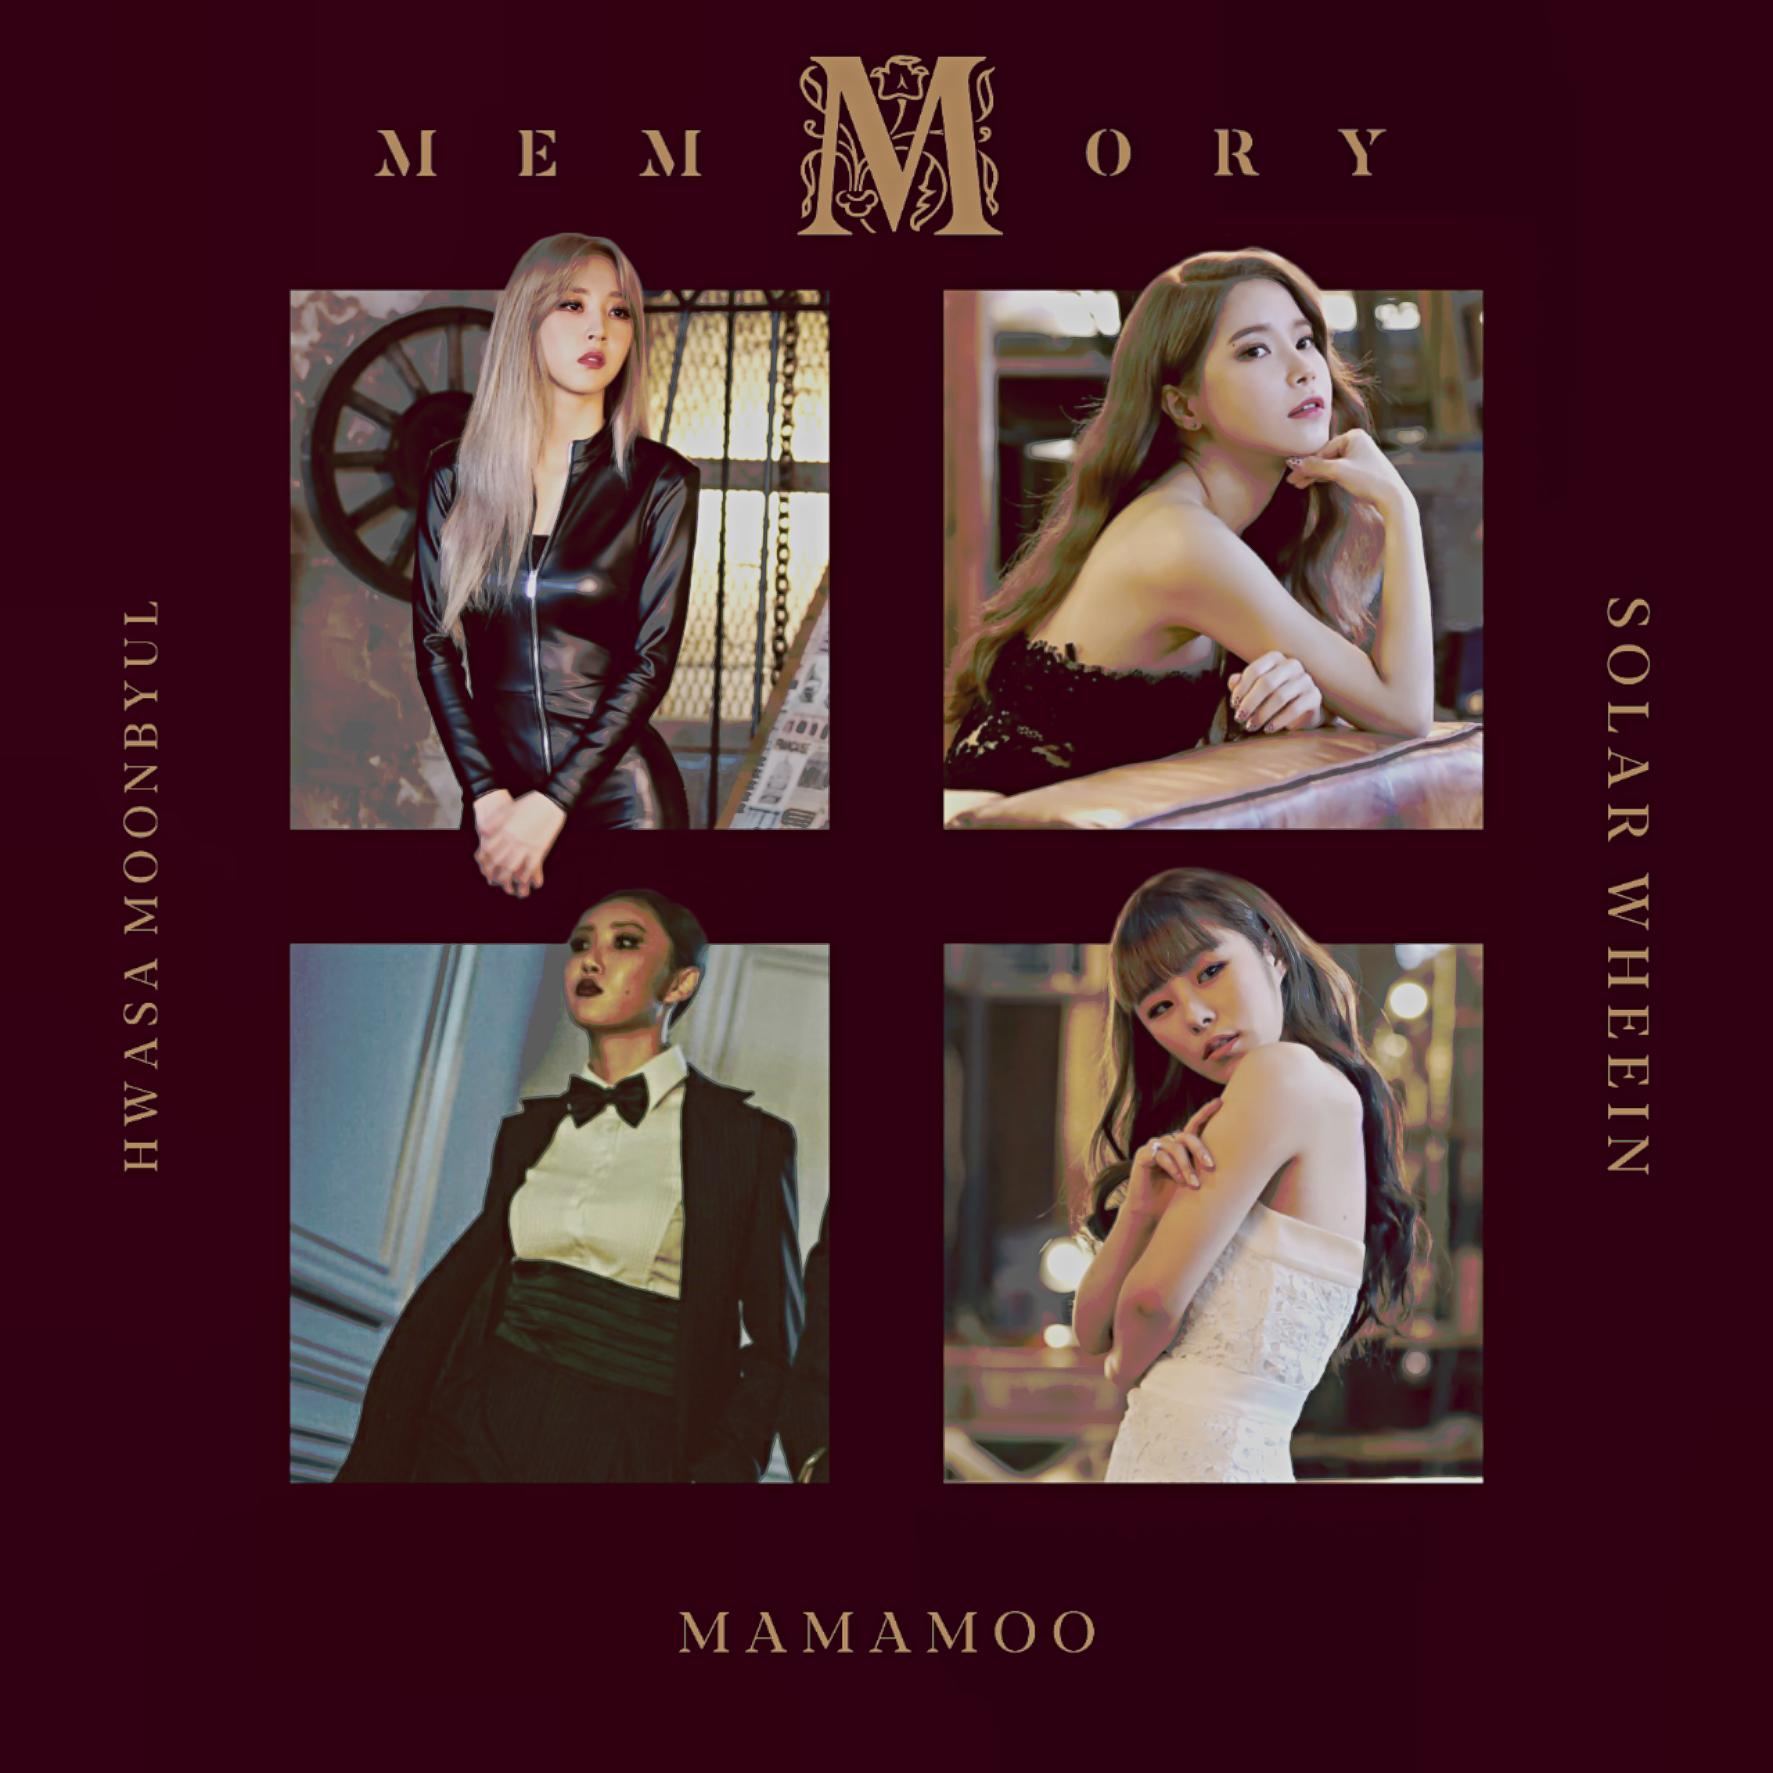 Memory mamamoo no dvd